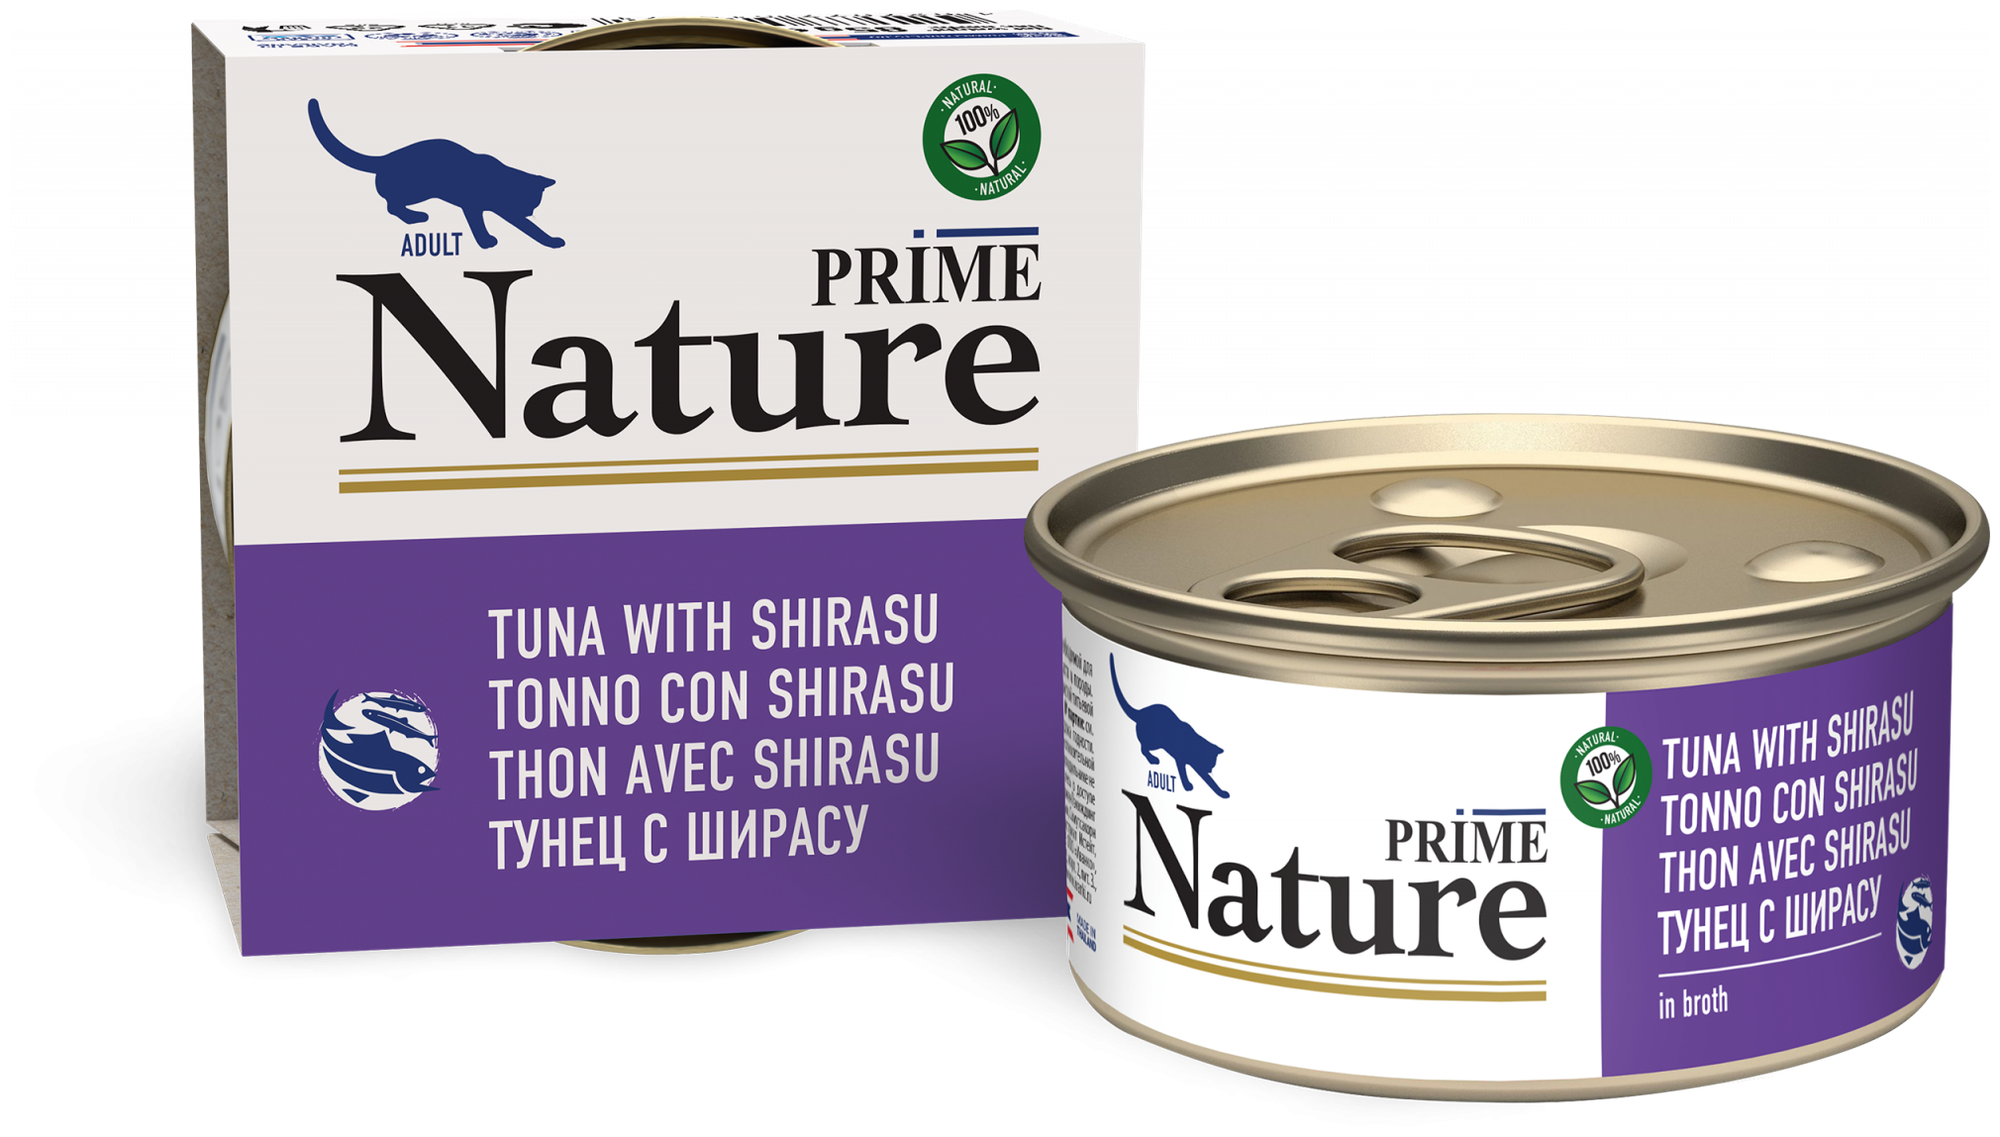 PRIME NATURE консервы для кошек в бульоне, тунец с ширасу 85гр.